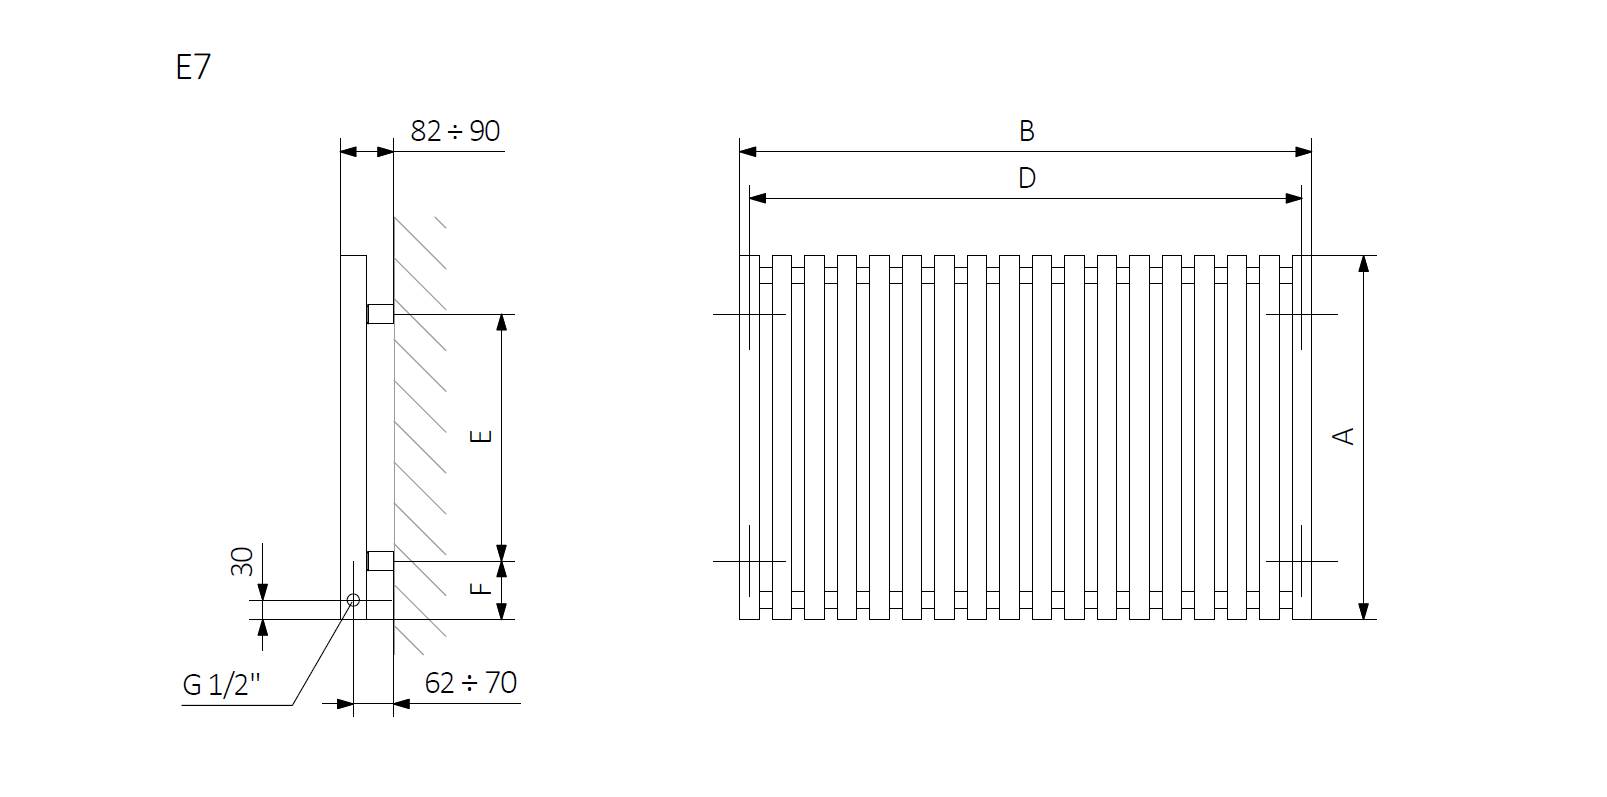 <p>A – wysokość B – szerokość C1-C5 – rozstaw podłączeń D – rozstaw mocowań w poziomie E – rozstaw mocowań w pionie,<br />
F – odległość od osi dolnego mocowania do dolnej krawędzi kolektora</p>